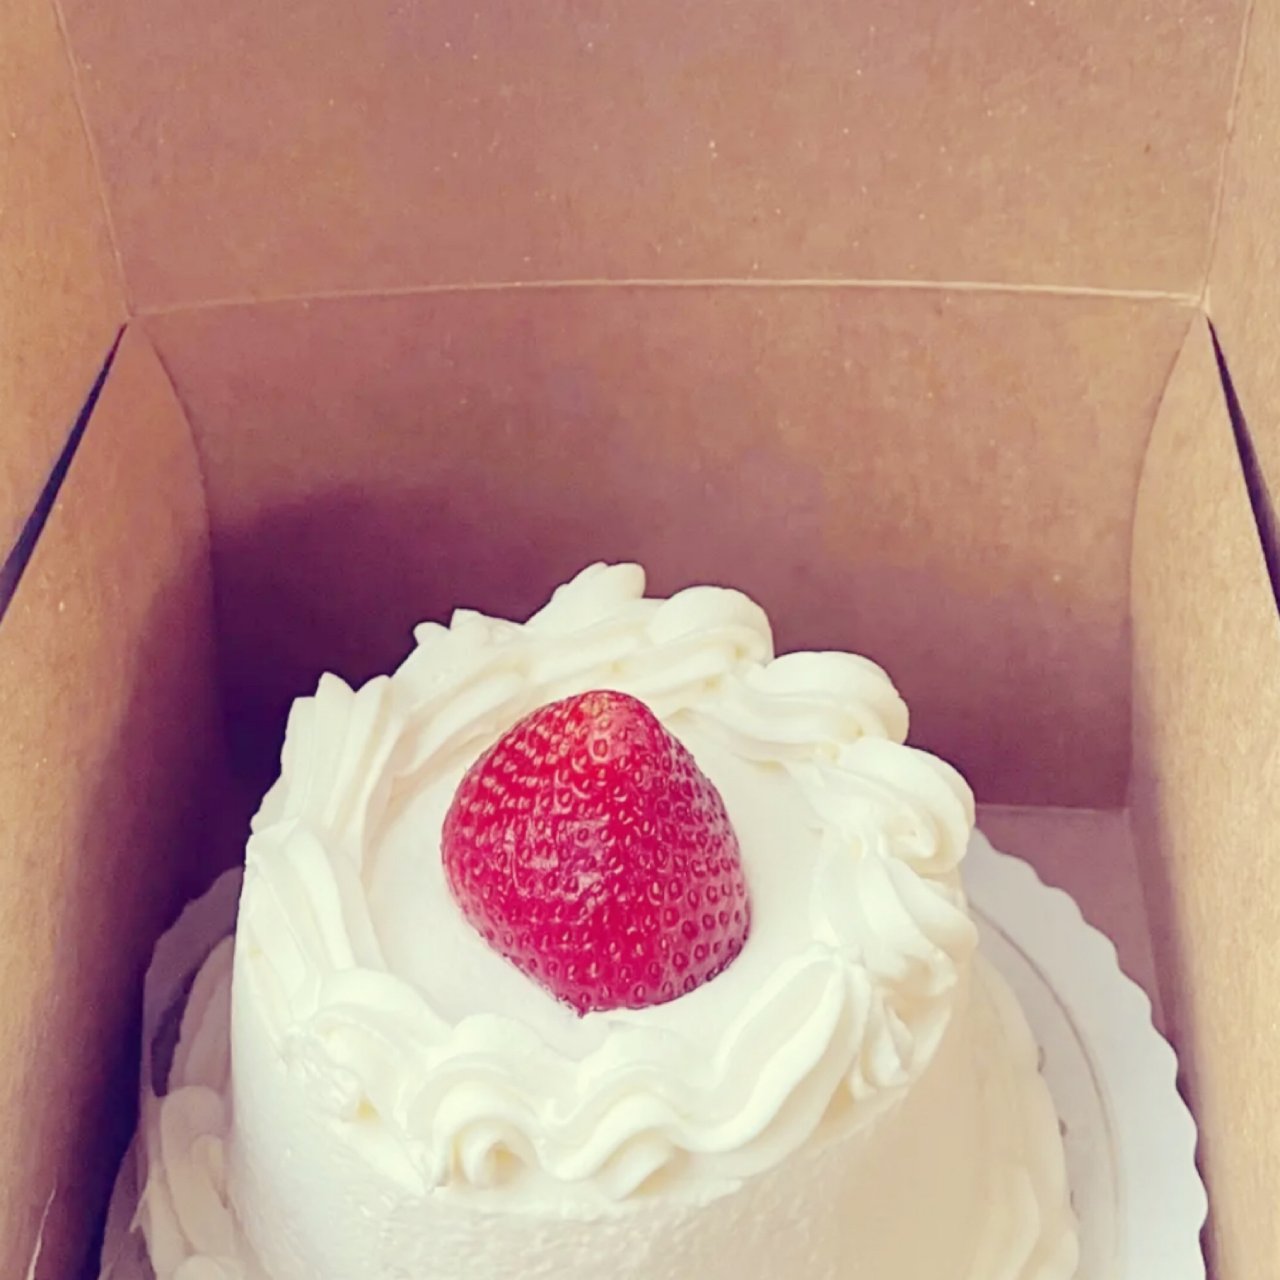 ㊗️君君生日快乐—云送蛋糕和水果Berr...